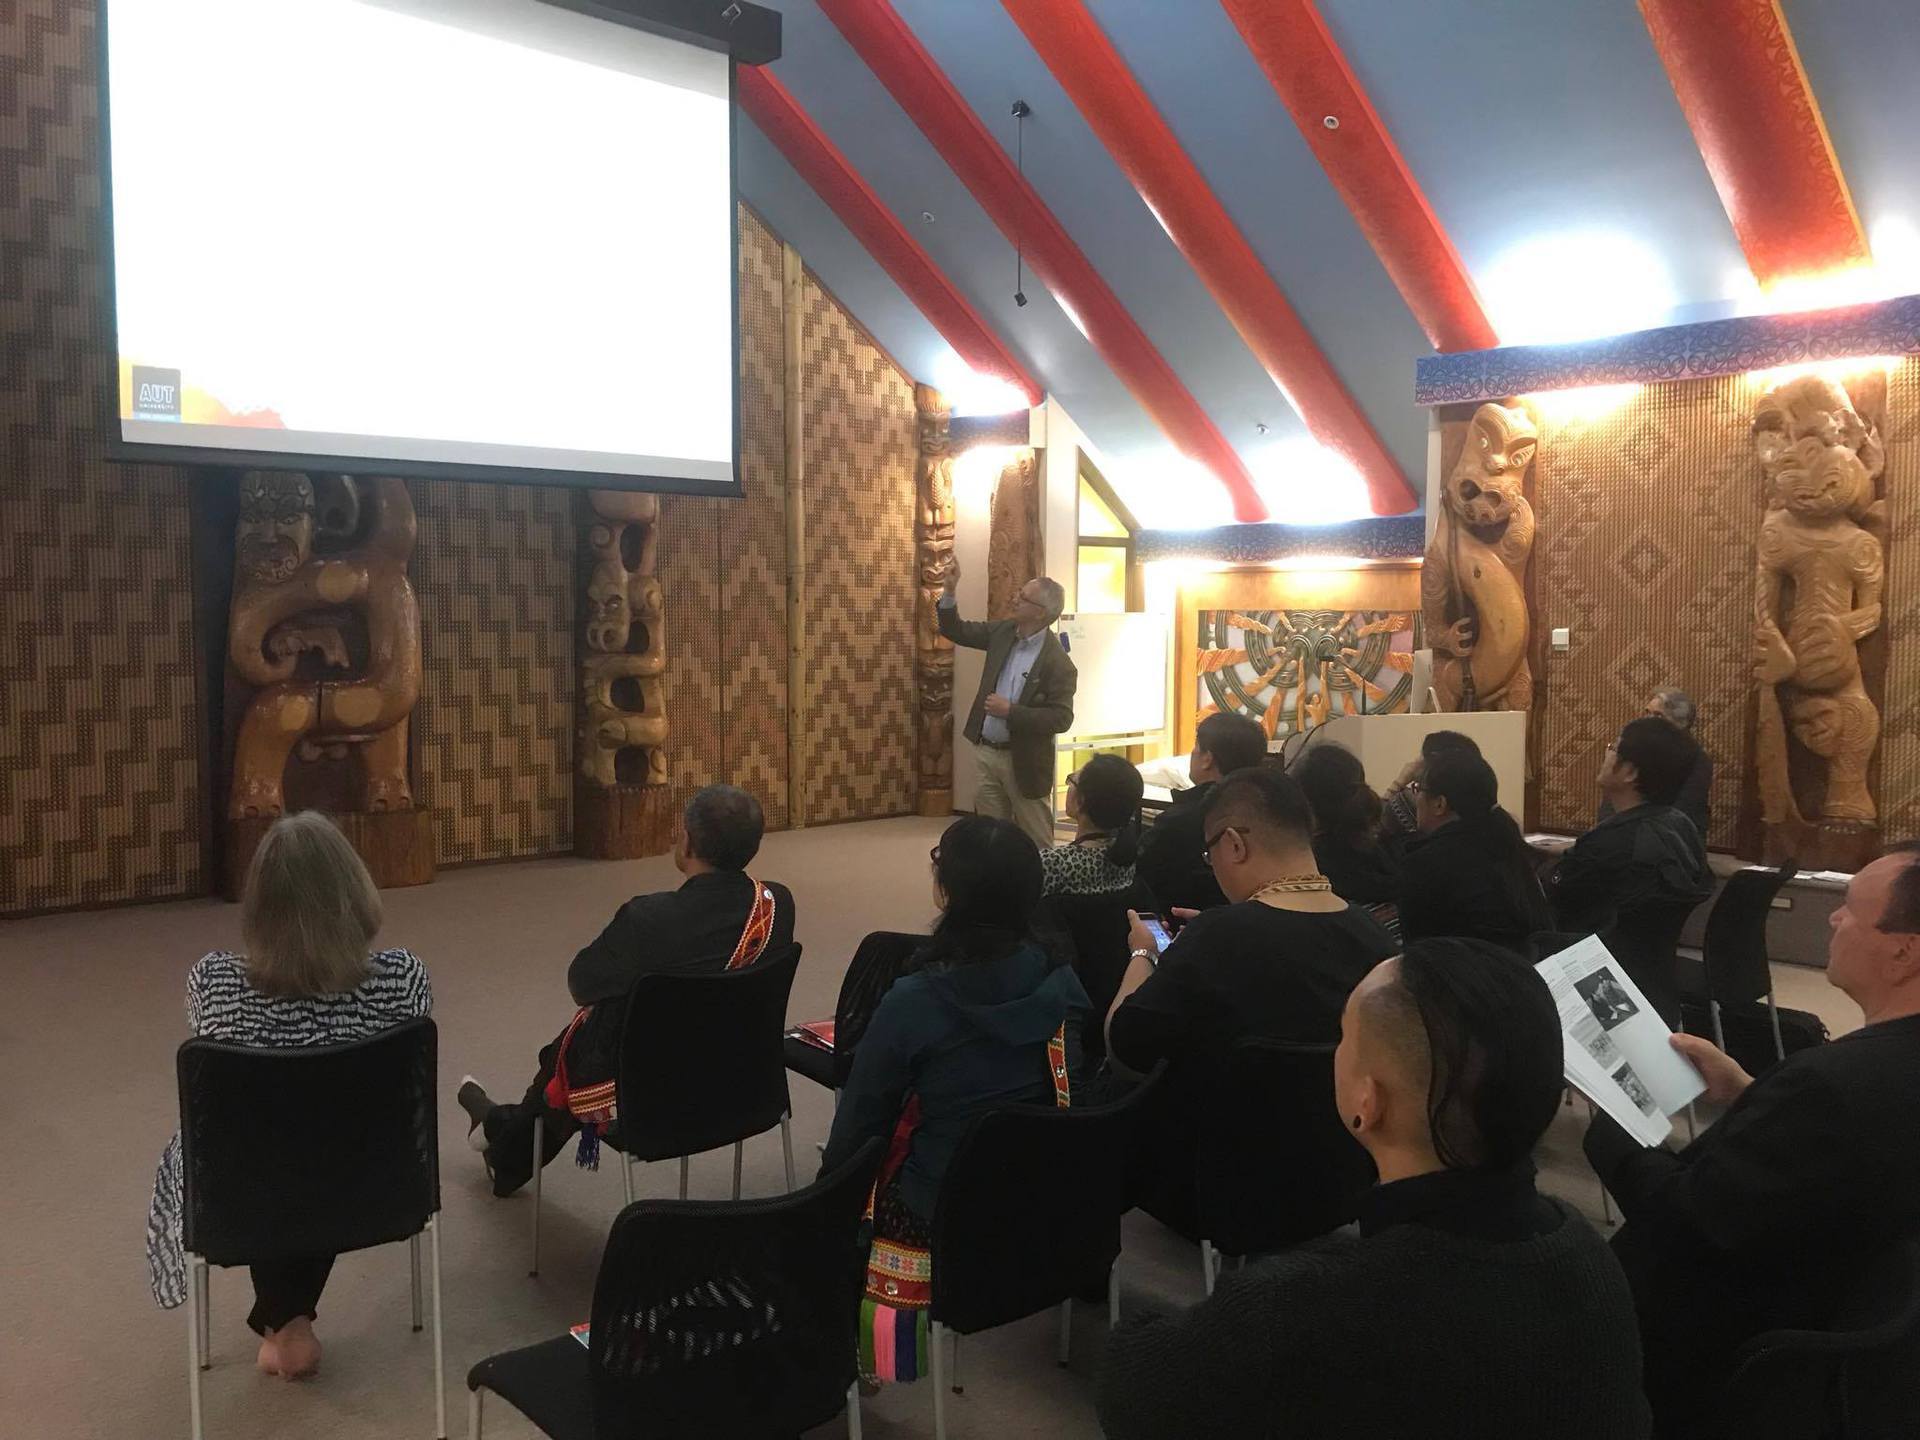 奧克蘭理工大學主管Dr. Pare Keiha於該校的Marea學習場所進行簡報，並說明透過科技在毛利教育傳承的功能。